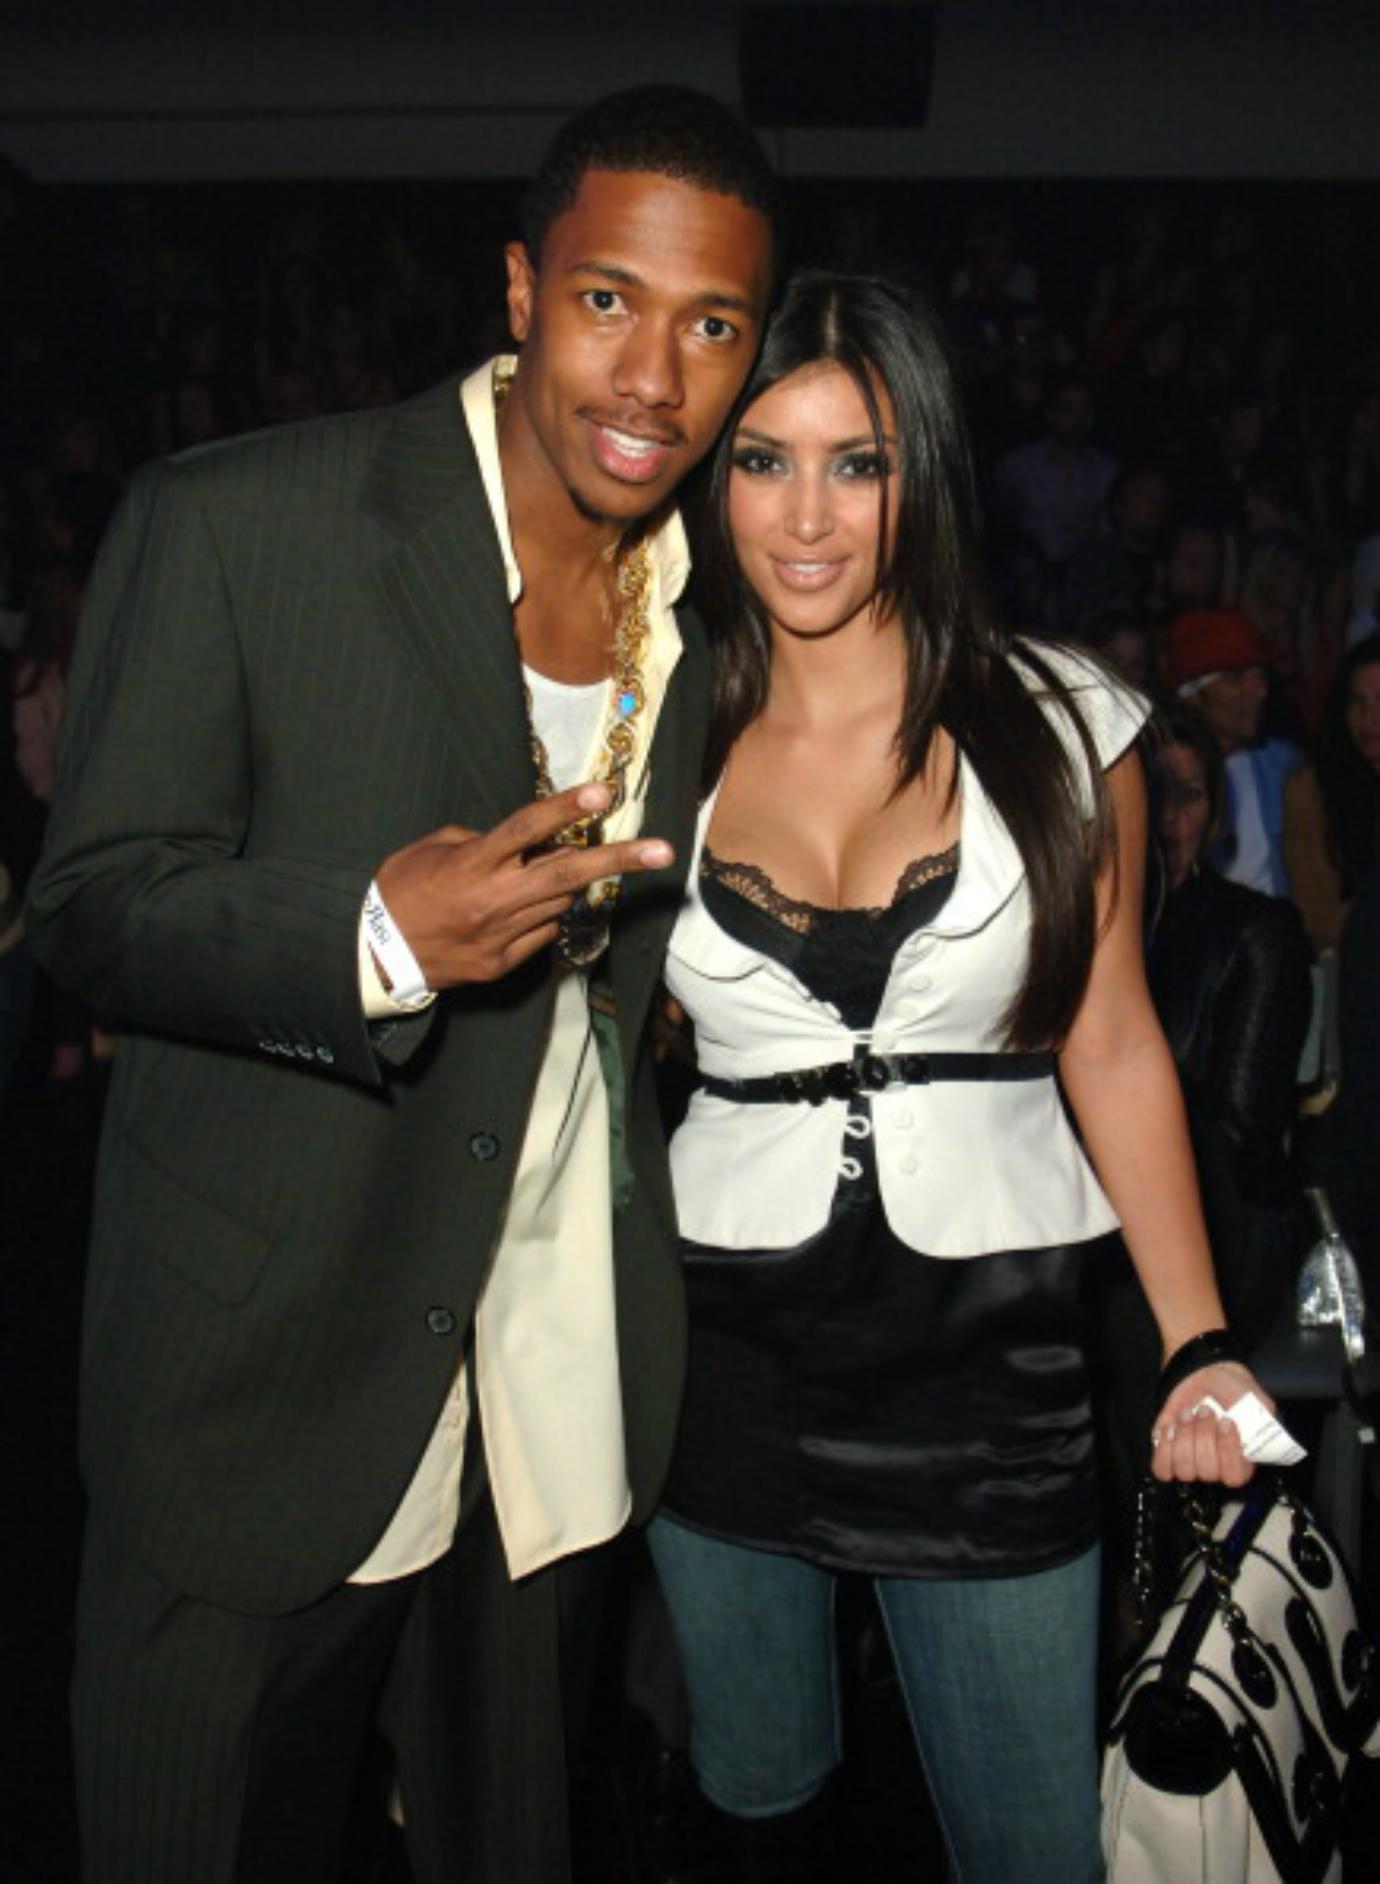 Kim Kardashian and Reggie Bush's Breakup Timeline